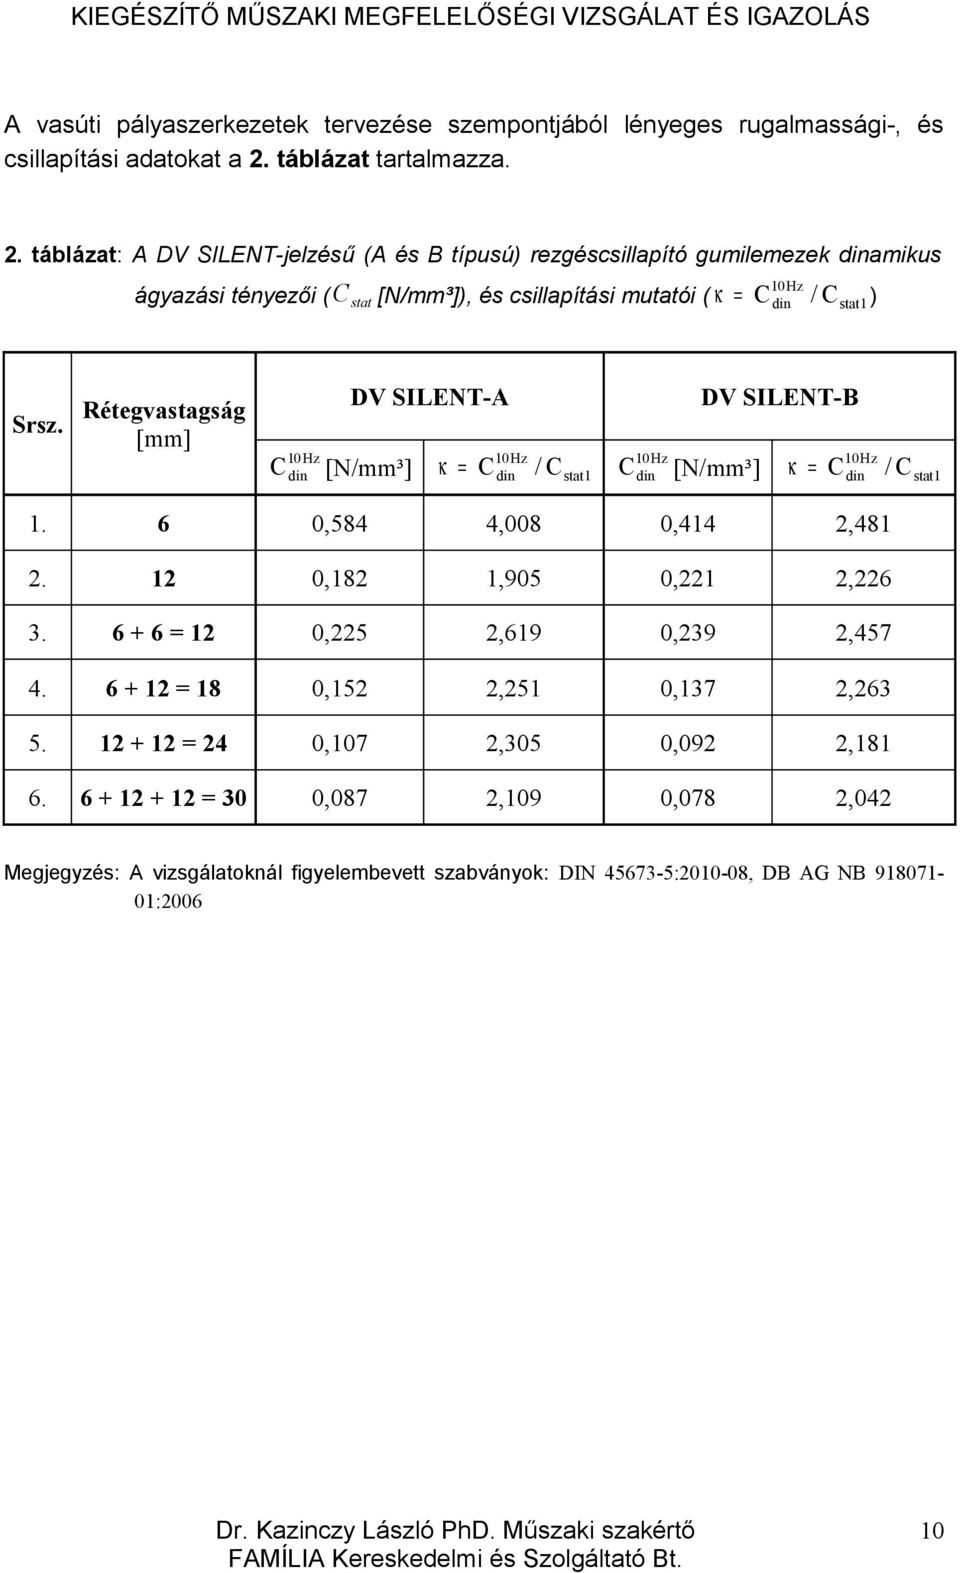 táblázat: A DV SILENT-jelzésű (A és B típusú) rezgéscsillapító gumilemezek dinamikus 10Hz ágyazási tényezői ( C stat [N/mm³]), és csillapítási mutatói ( κ = Cdin / Cstat1) Srsz.